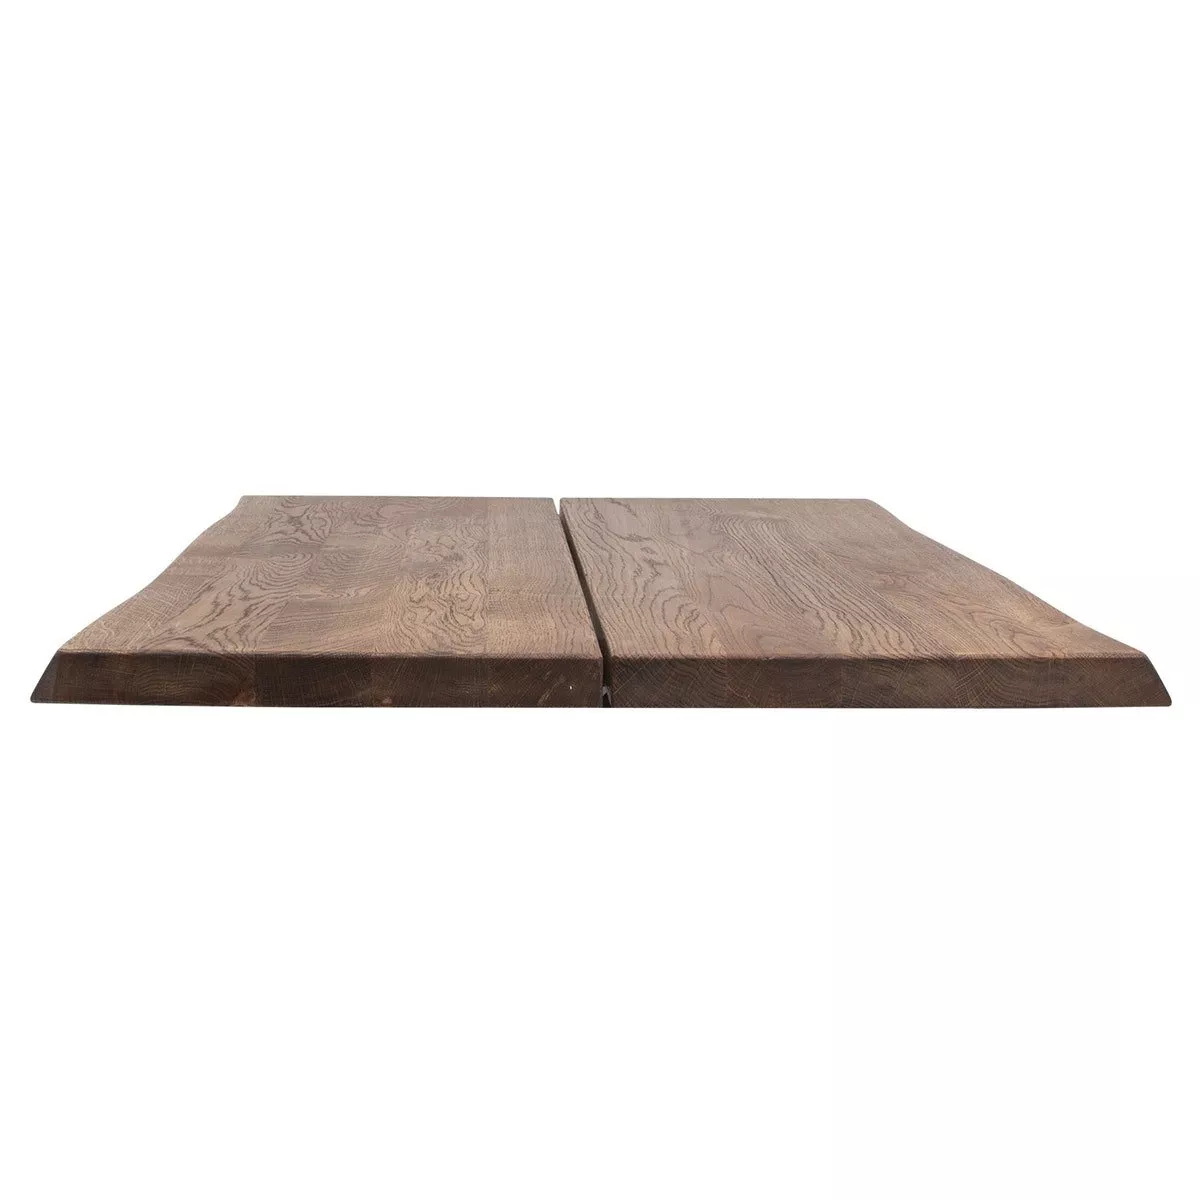 #2 - Hugin, Bordplade til sofa- eller cafébord, Egetræ by House of Sander (H: 4 cm. B: 80 cm. L: 80 cm., Smoked)